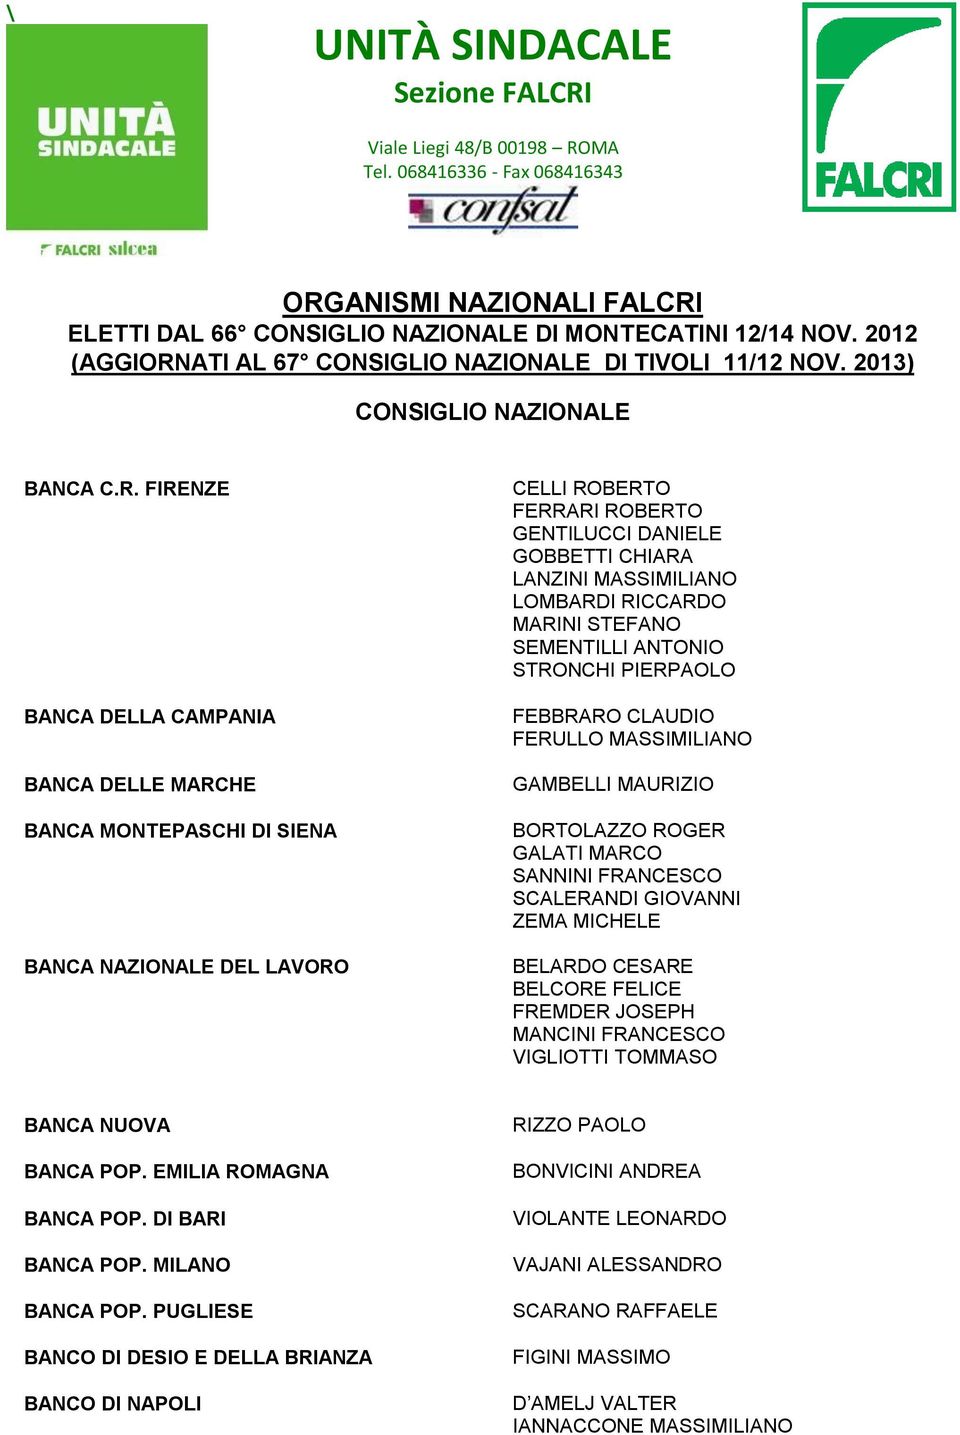 ATI AL 67 CONSIGLIO NAZIONALE DI TIVOLI 11/12 NOV. 2013) CONSIGLIO NAZIONALE BANCA C.R.